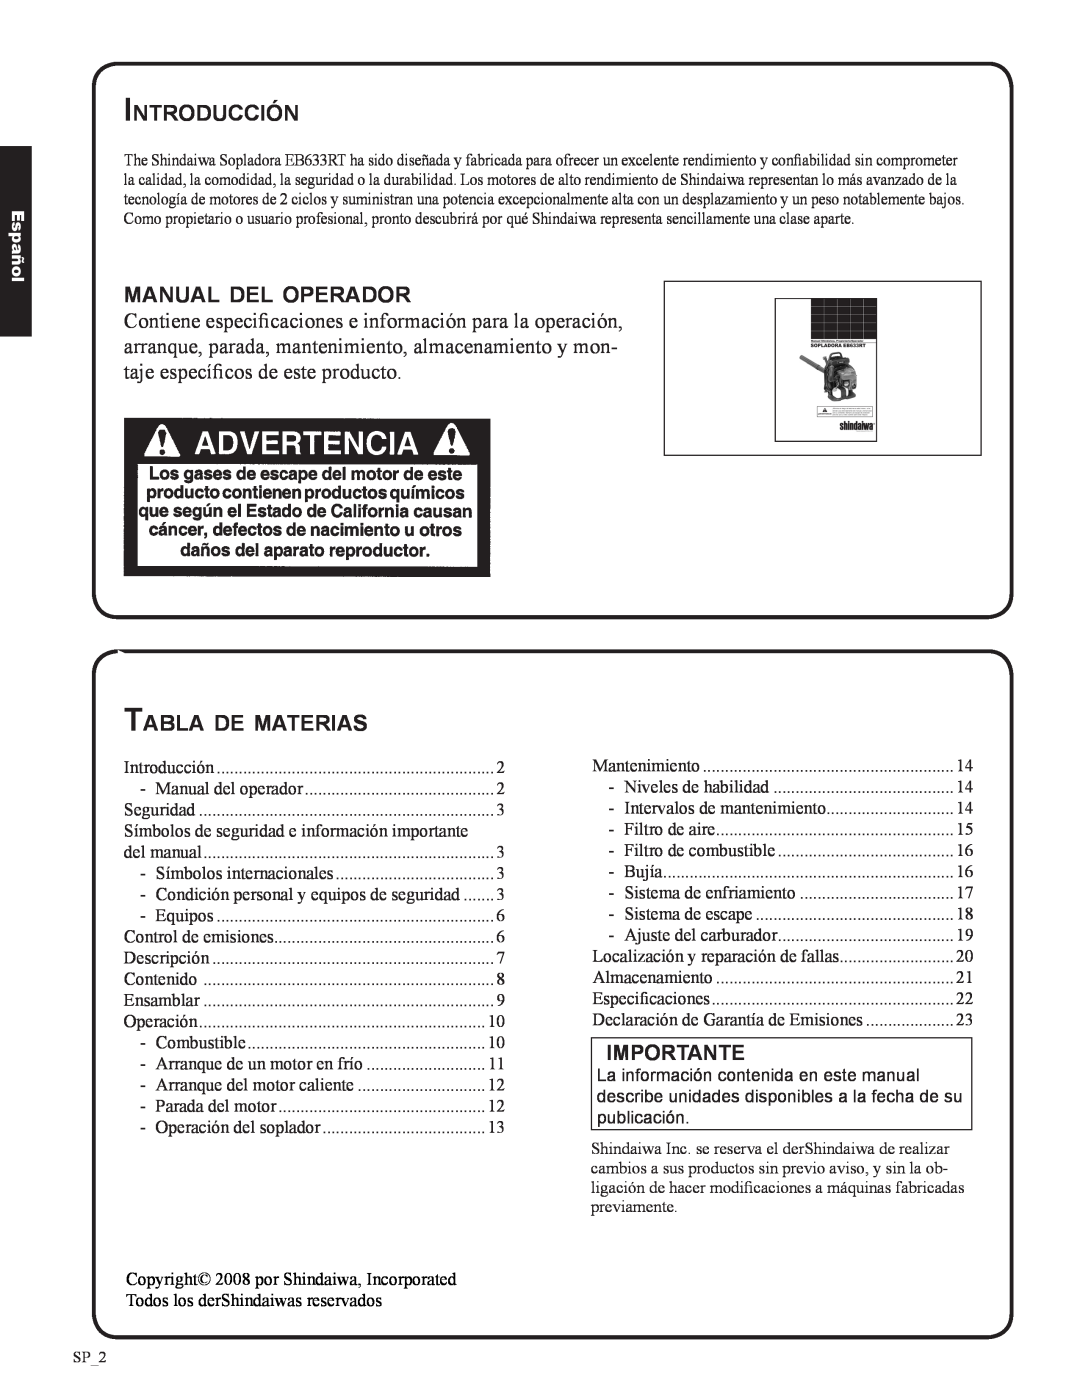 Shindaiwa EB633RT, 82050 Introducción, manual del operador, Tabla de materias, Importante, Español 